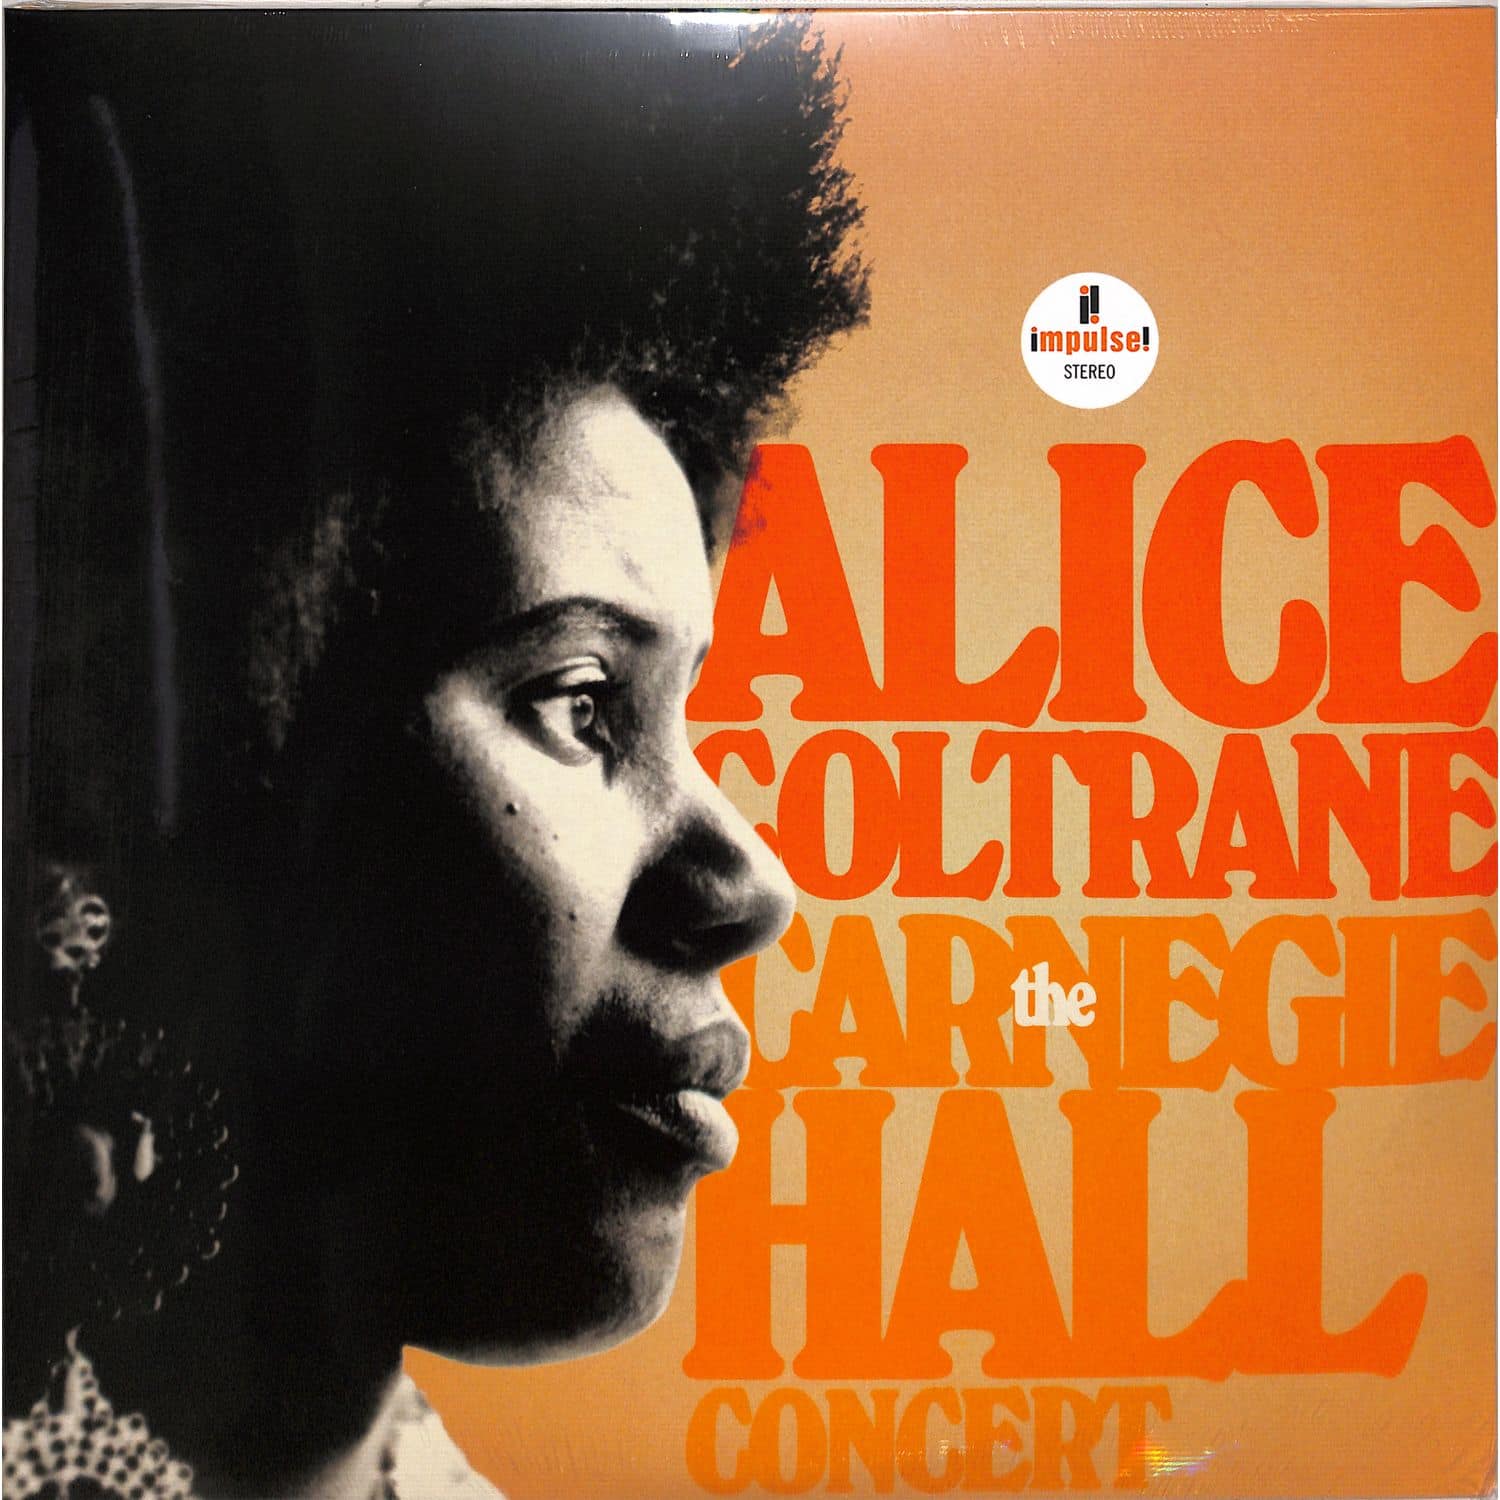 Alice Coltrane - THE CARNEGIE HALL CONCERT 